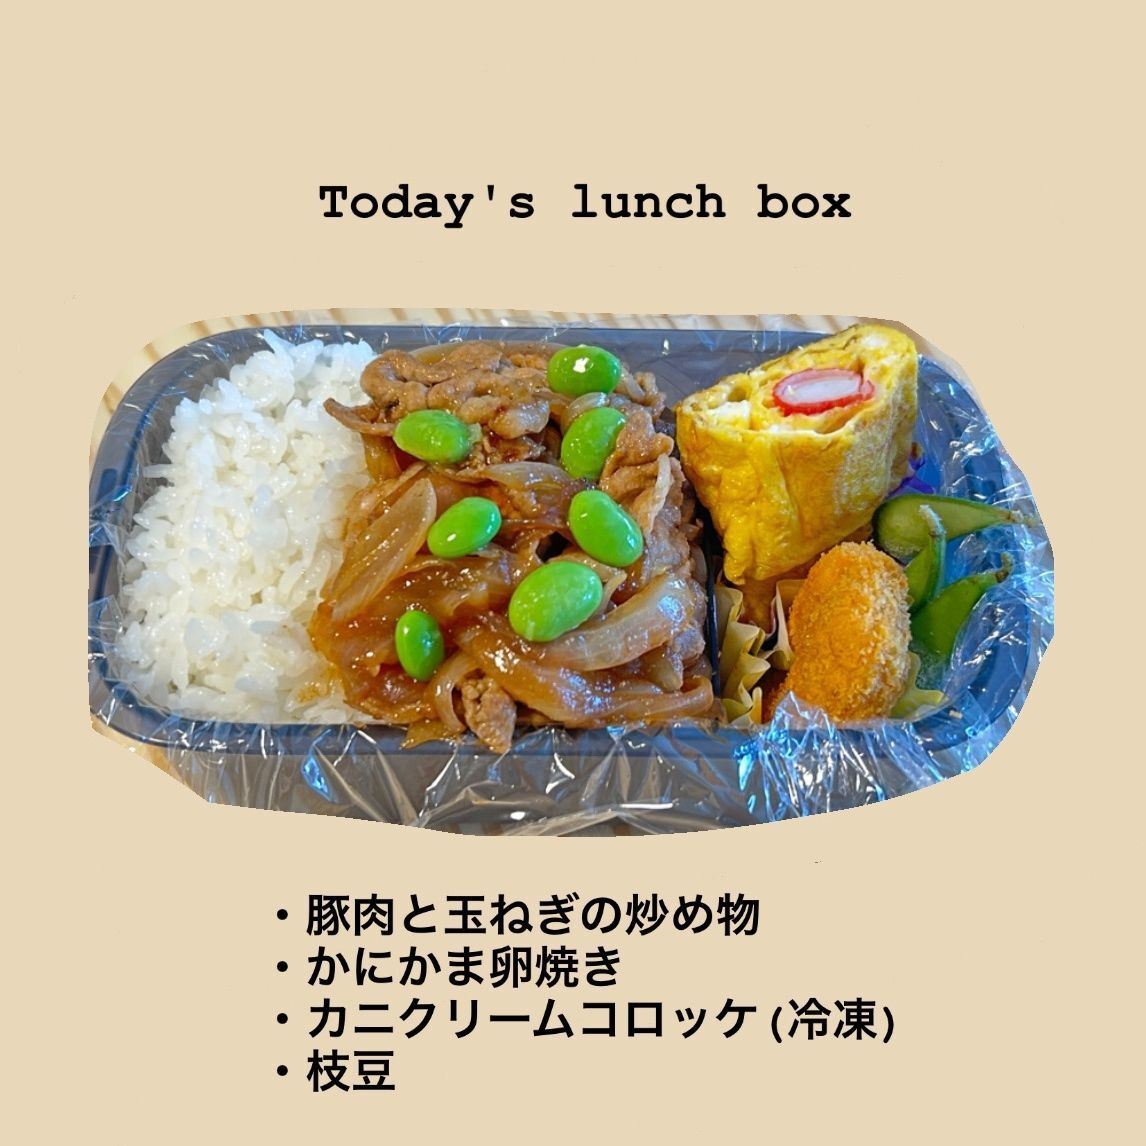 【今日のお弁当】豚肉と玉ねぎの炒め物など